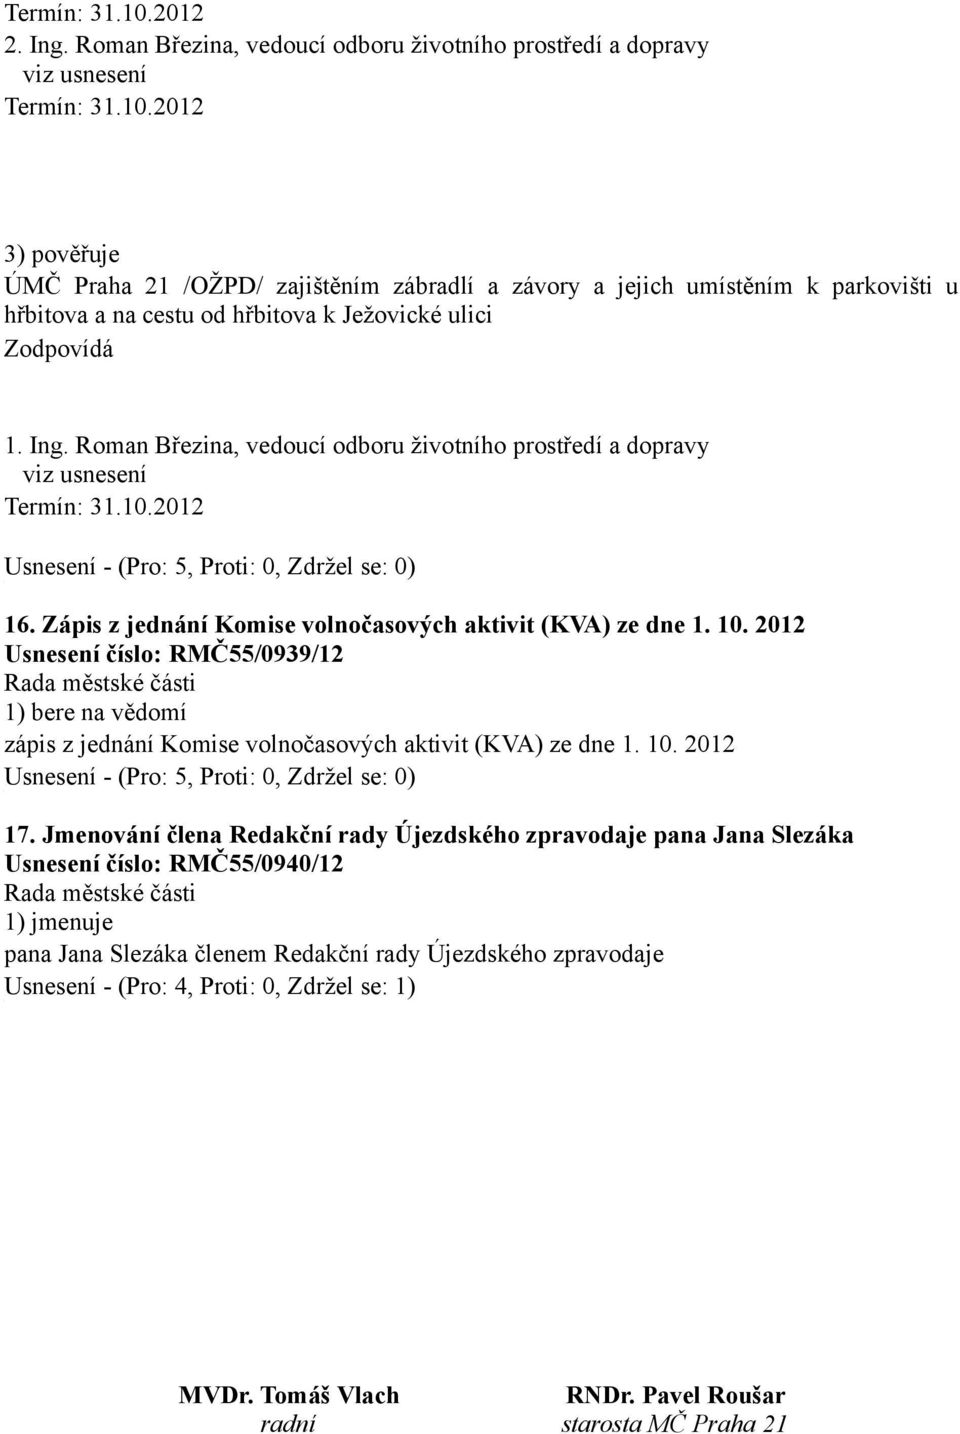 2012 Usnesení číslo: RMČ55/0939/12 zápis z jednání Komise volnočasových aktivit (KVA) ze dne 1. 10. 2012 17.